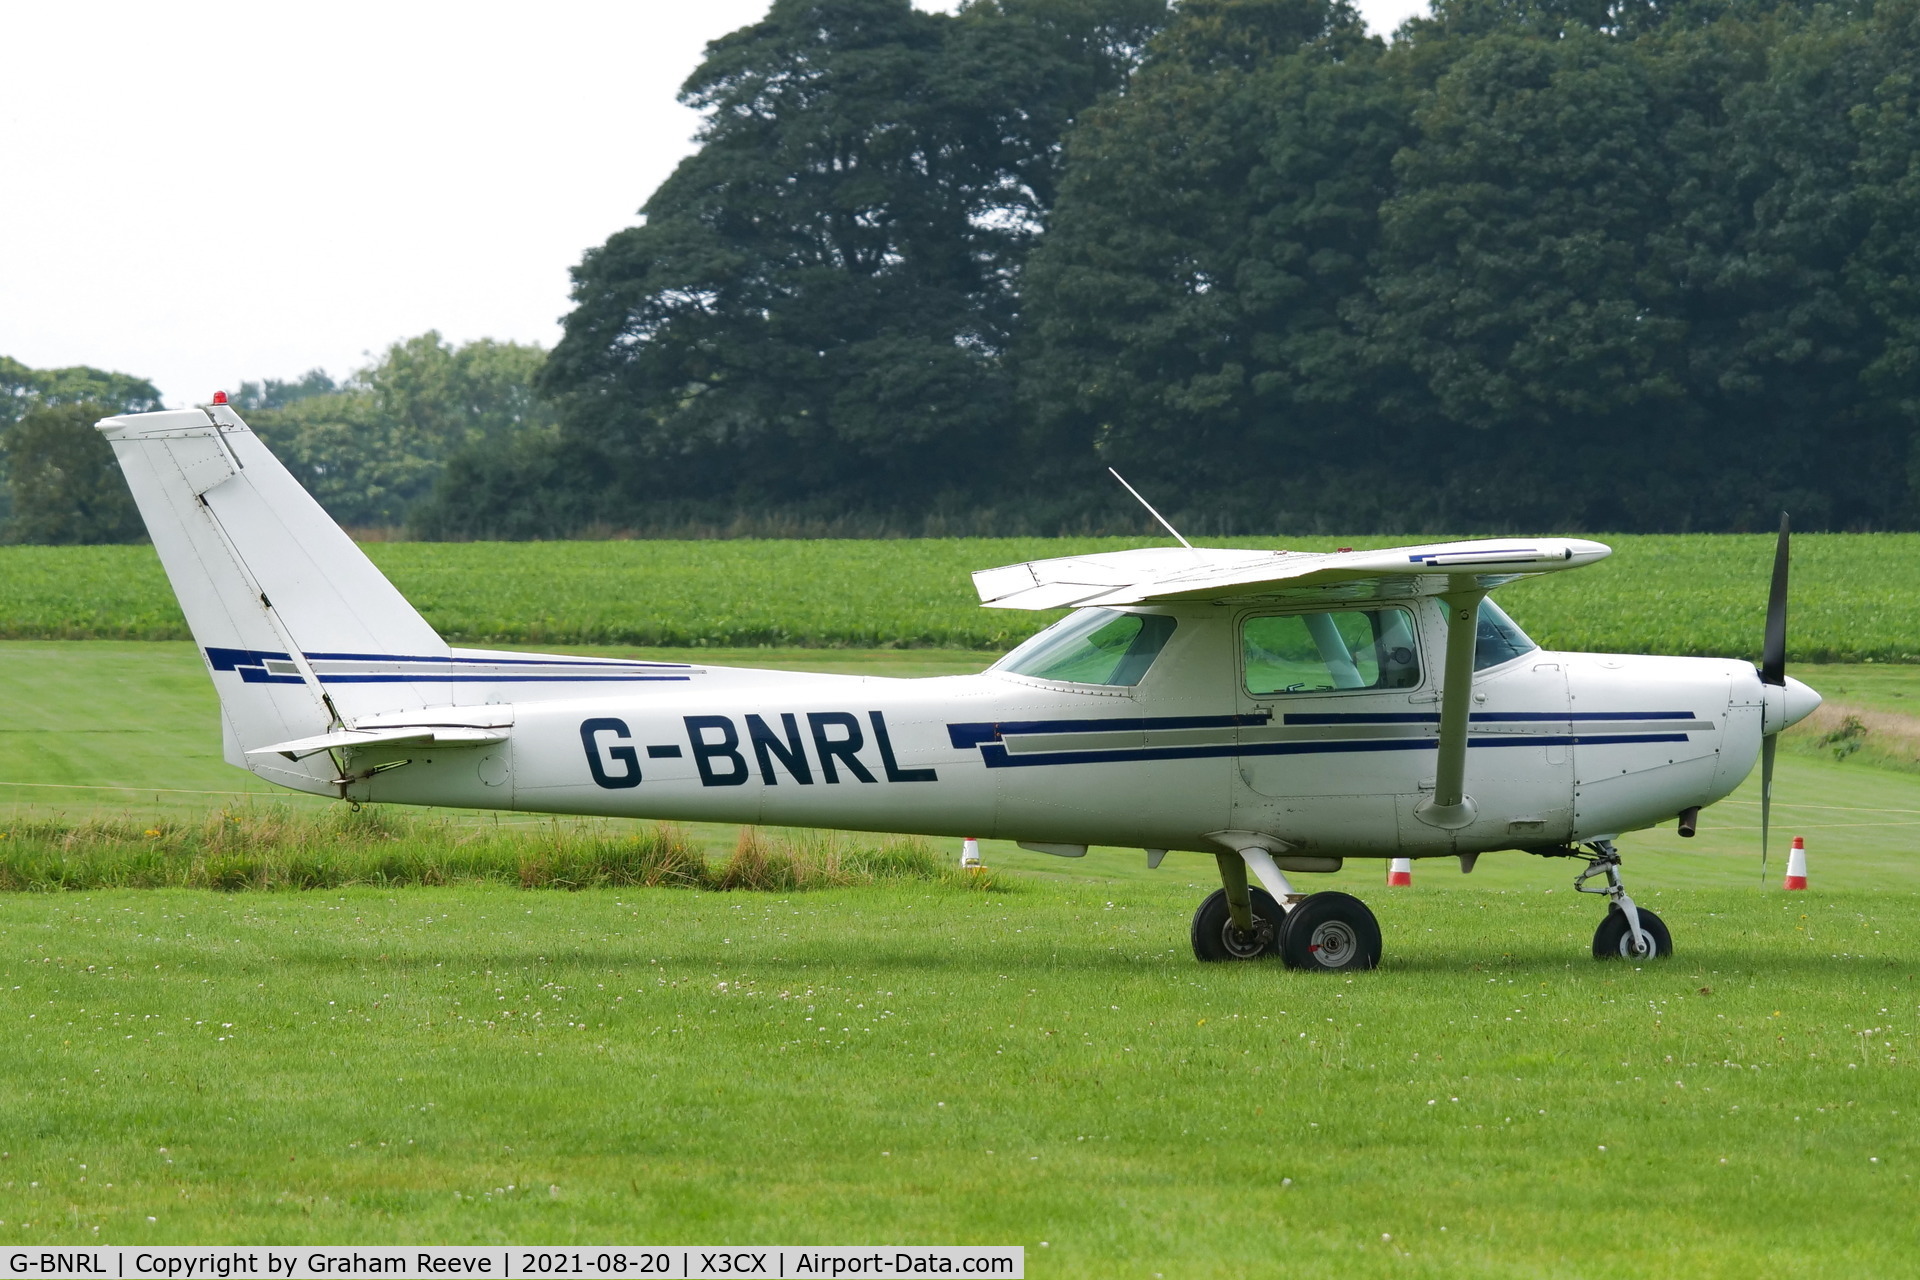 G-BNRL, 1984 Cessna 152 C/N 152-84250, Parked at Northrepps.